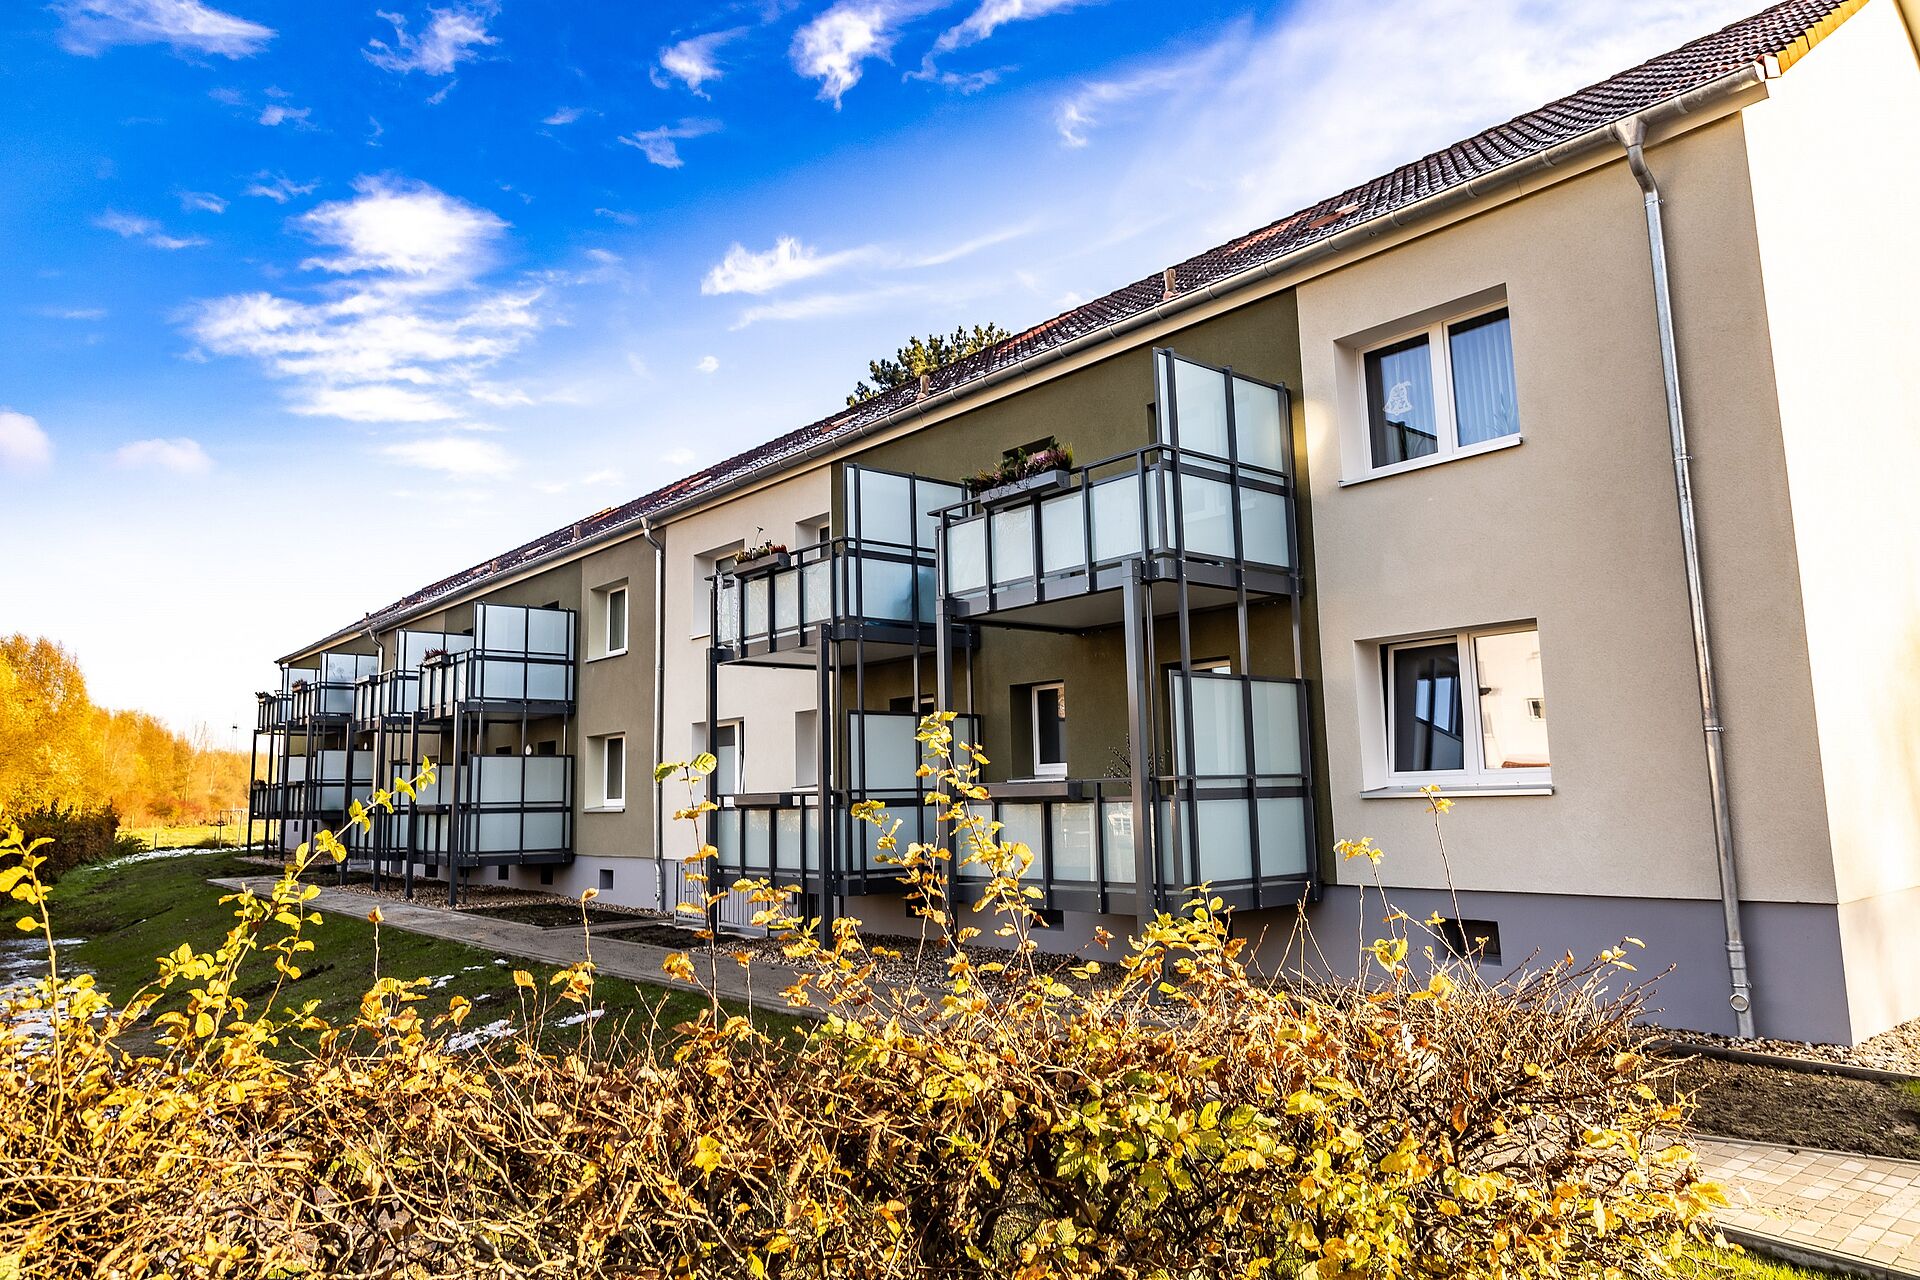 Drei modernisierte Mehrfamilienhäuser mit verputzter Wärmedämmung und mit großen Vorstellbalkonen ist umgeben von Bü+schen und Bäumen unter einem strahlend blauen Himmel